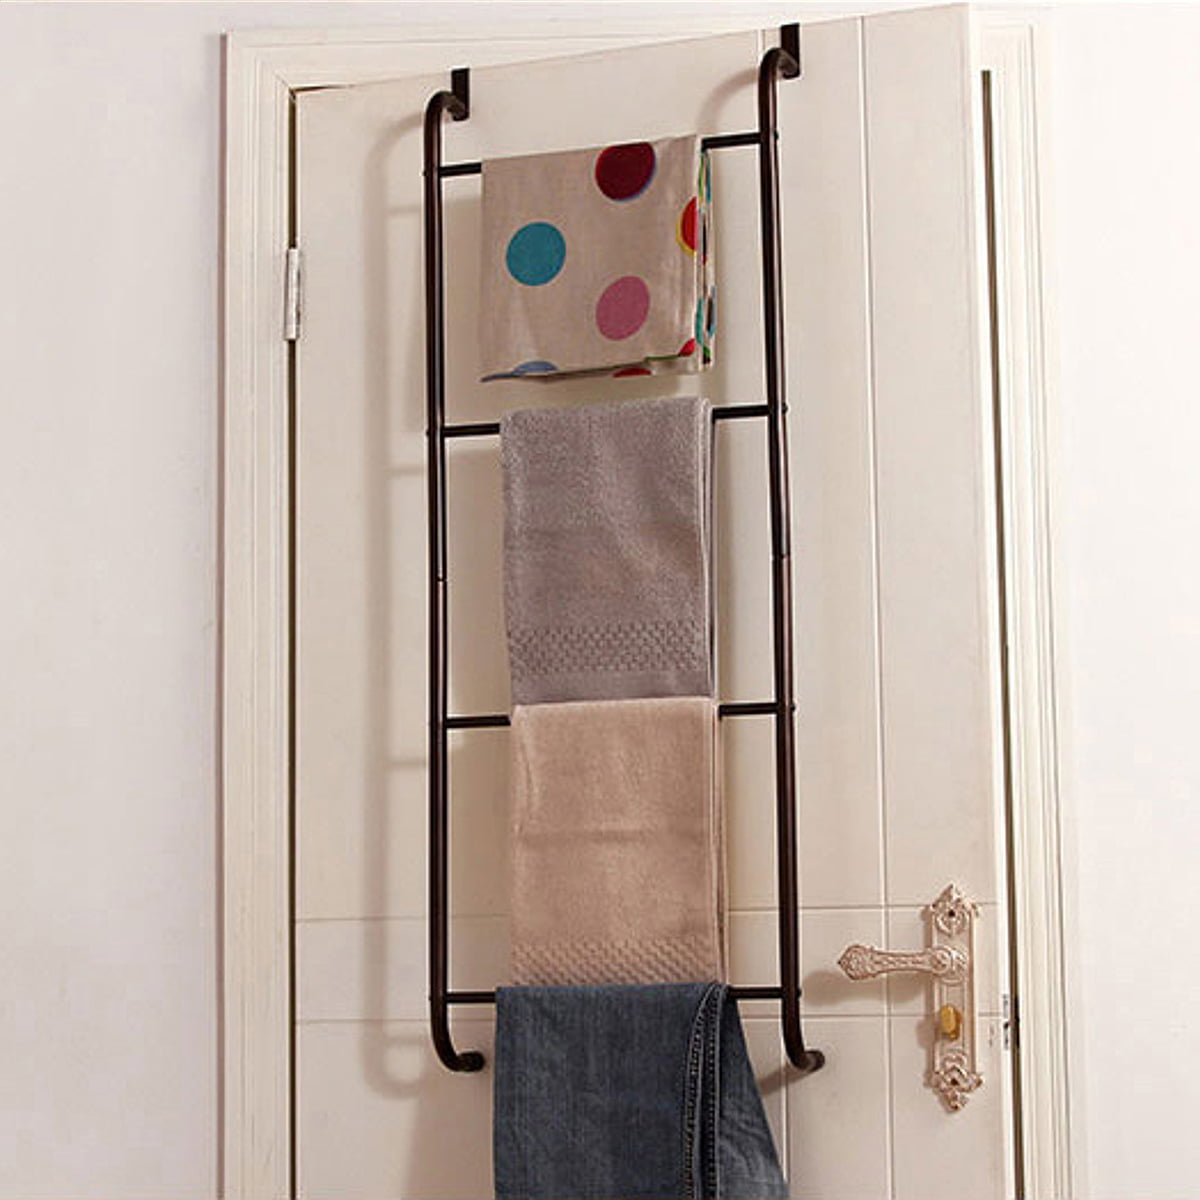 Over the Door Towel RackBathroom or Shower Door 4 Bar Hanging Holder for Towels, Washcloths or